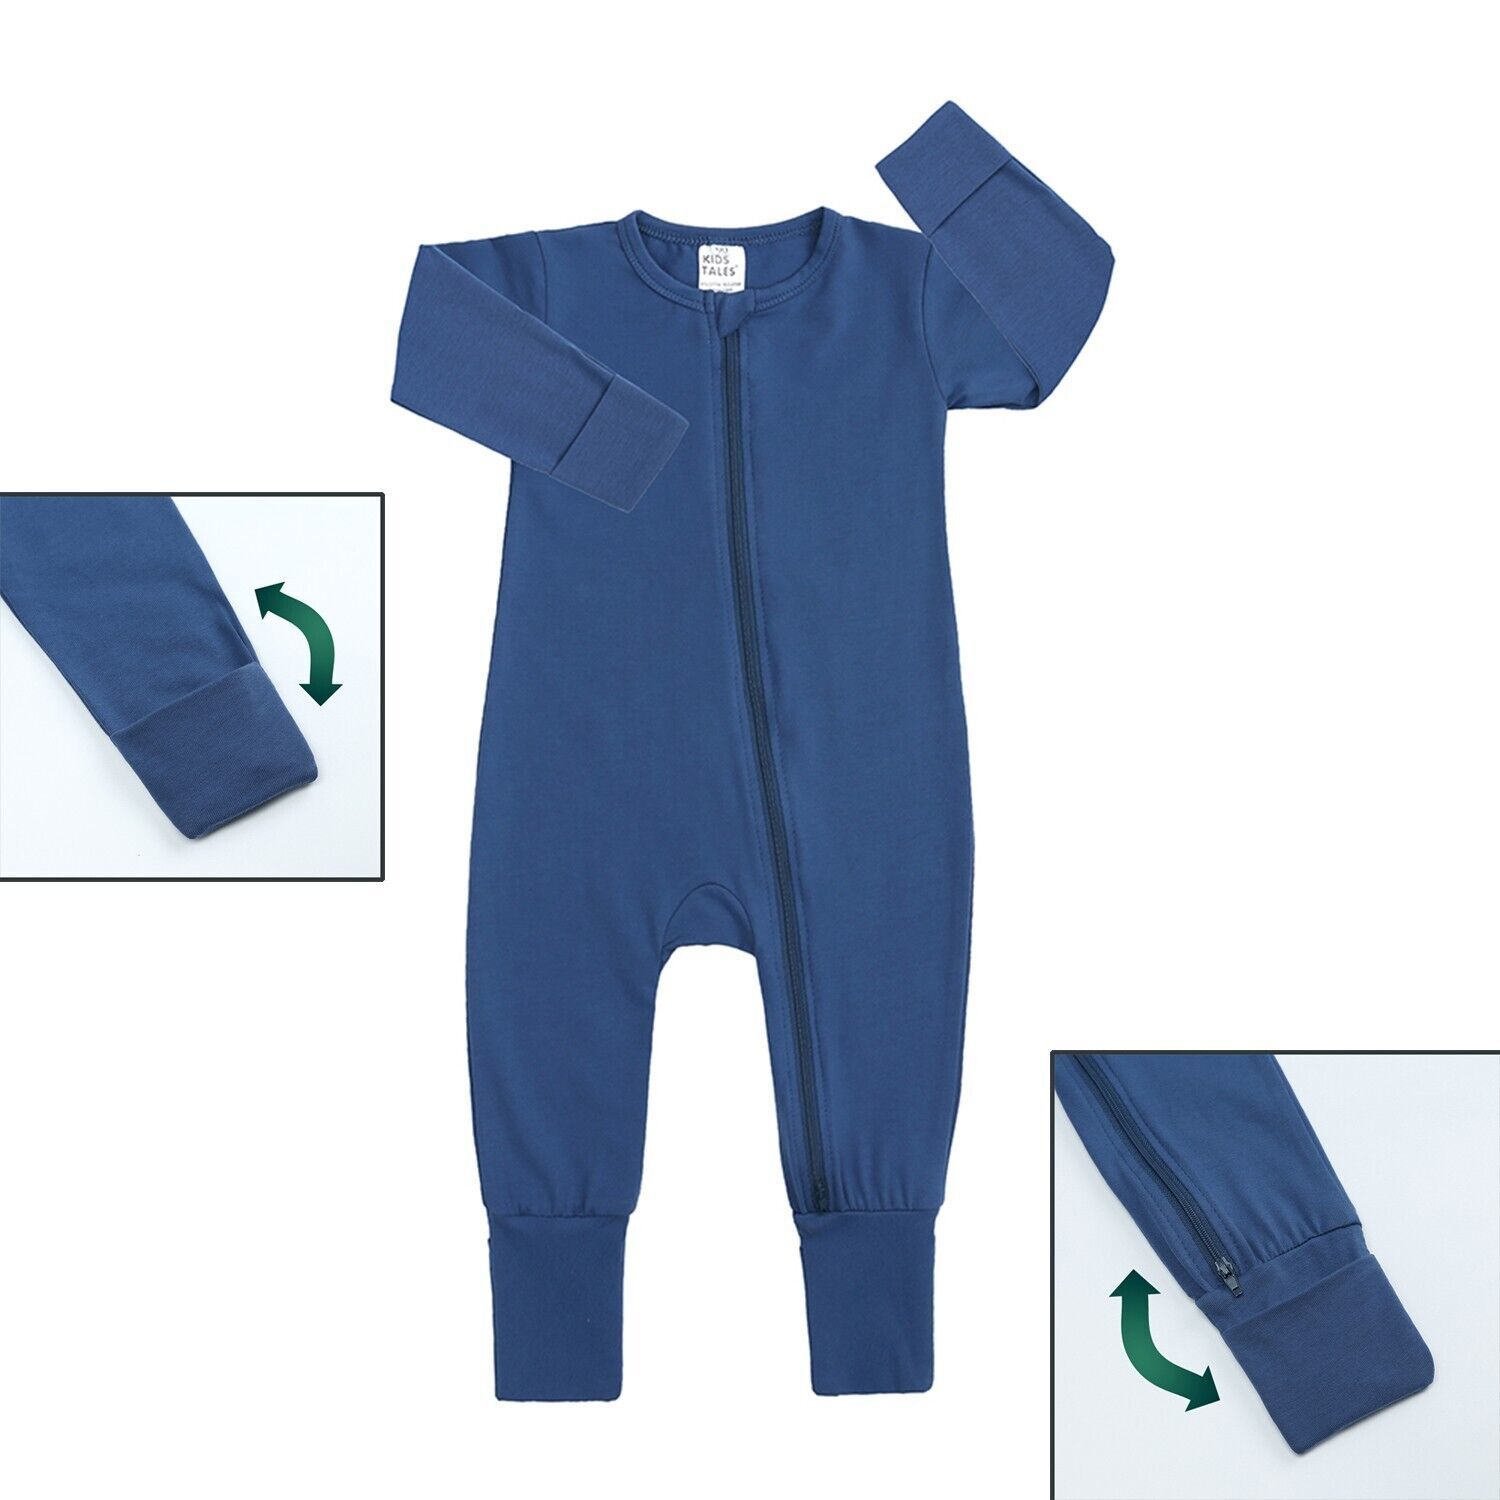 Kids Tales - Best baby romper blue 18-24mo cotton double zipper infant bodysuit unisex pajama